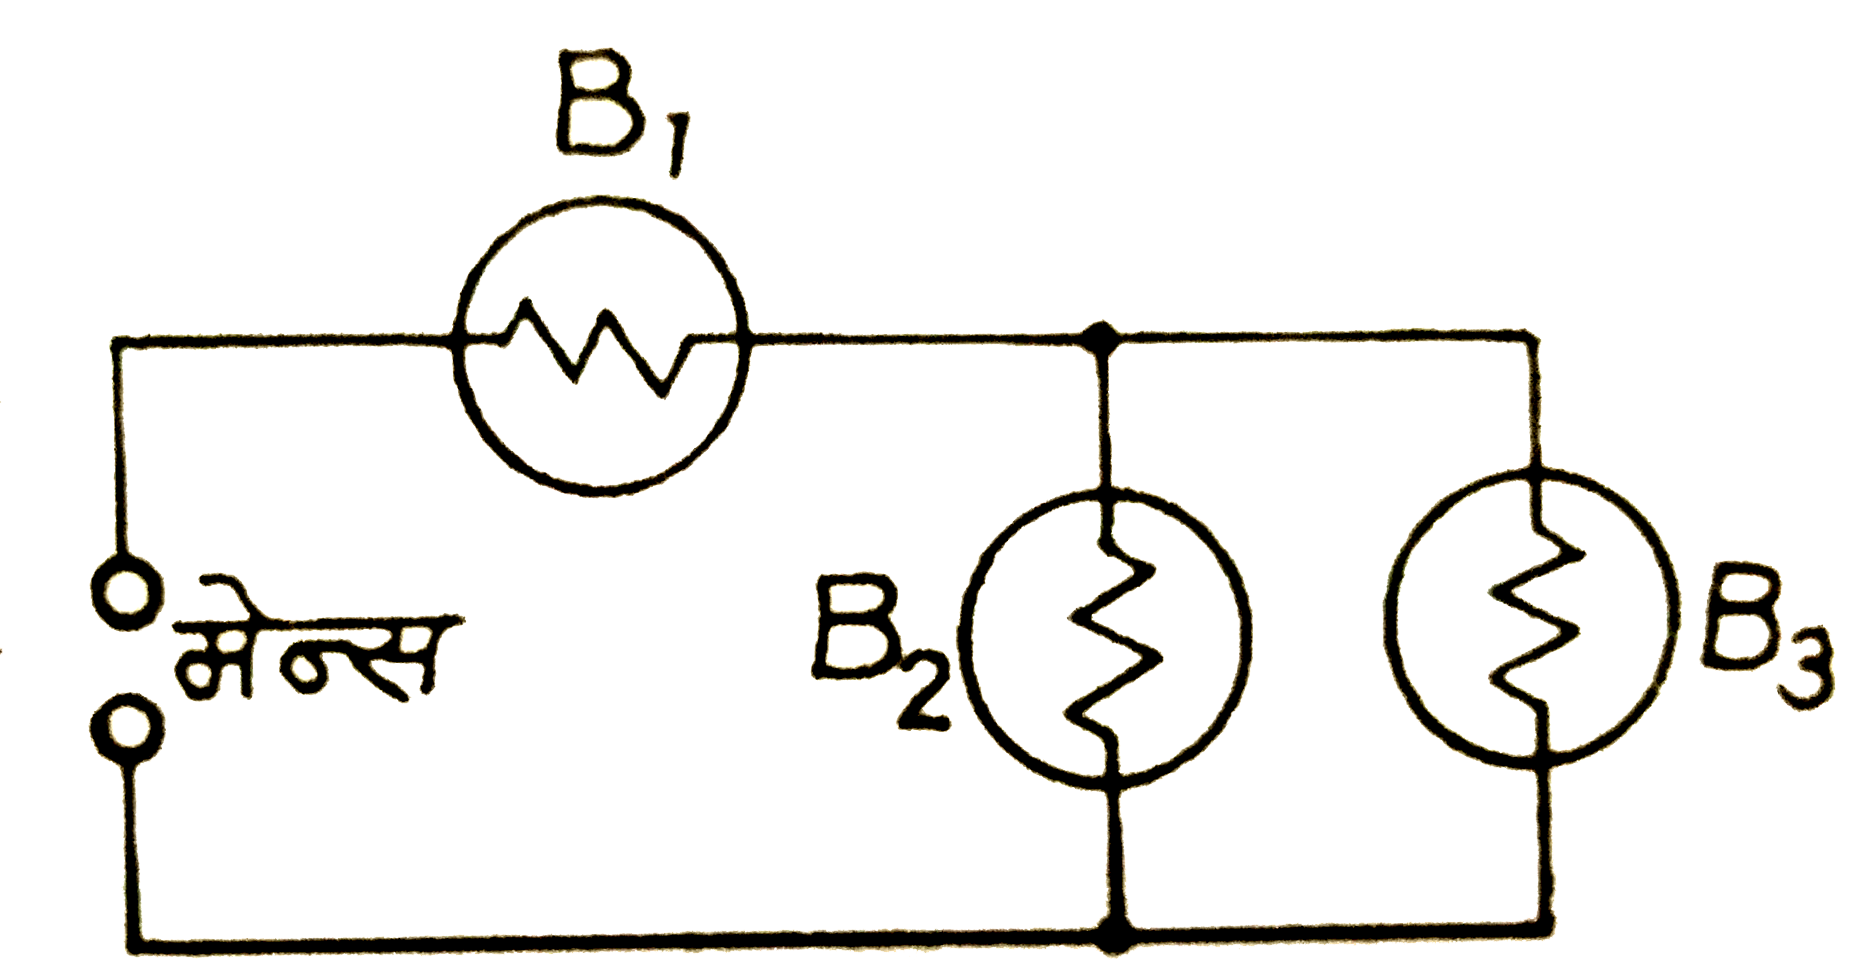 तीन  बल्ब B(1),B(2)   तथा  B(3)  एक  विधुत  - मेन्स  से  संलग्न चित्रानुसार  जुड़े  हैं। यदि  बल्ब  B(3)   को  परिपथ  से  हटा  दिया  जाये  , तो  बल्बों B(1)     व   B(2)  की  चमक  पर क्या  प्रभाव  पड़ेगा ?